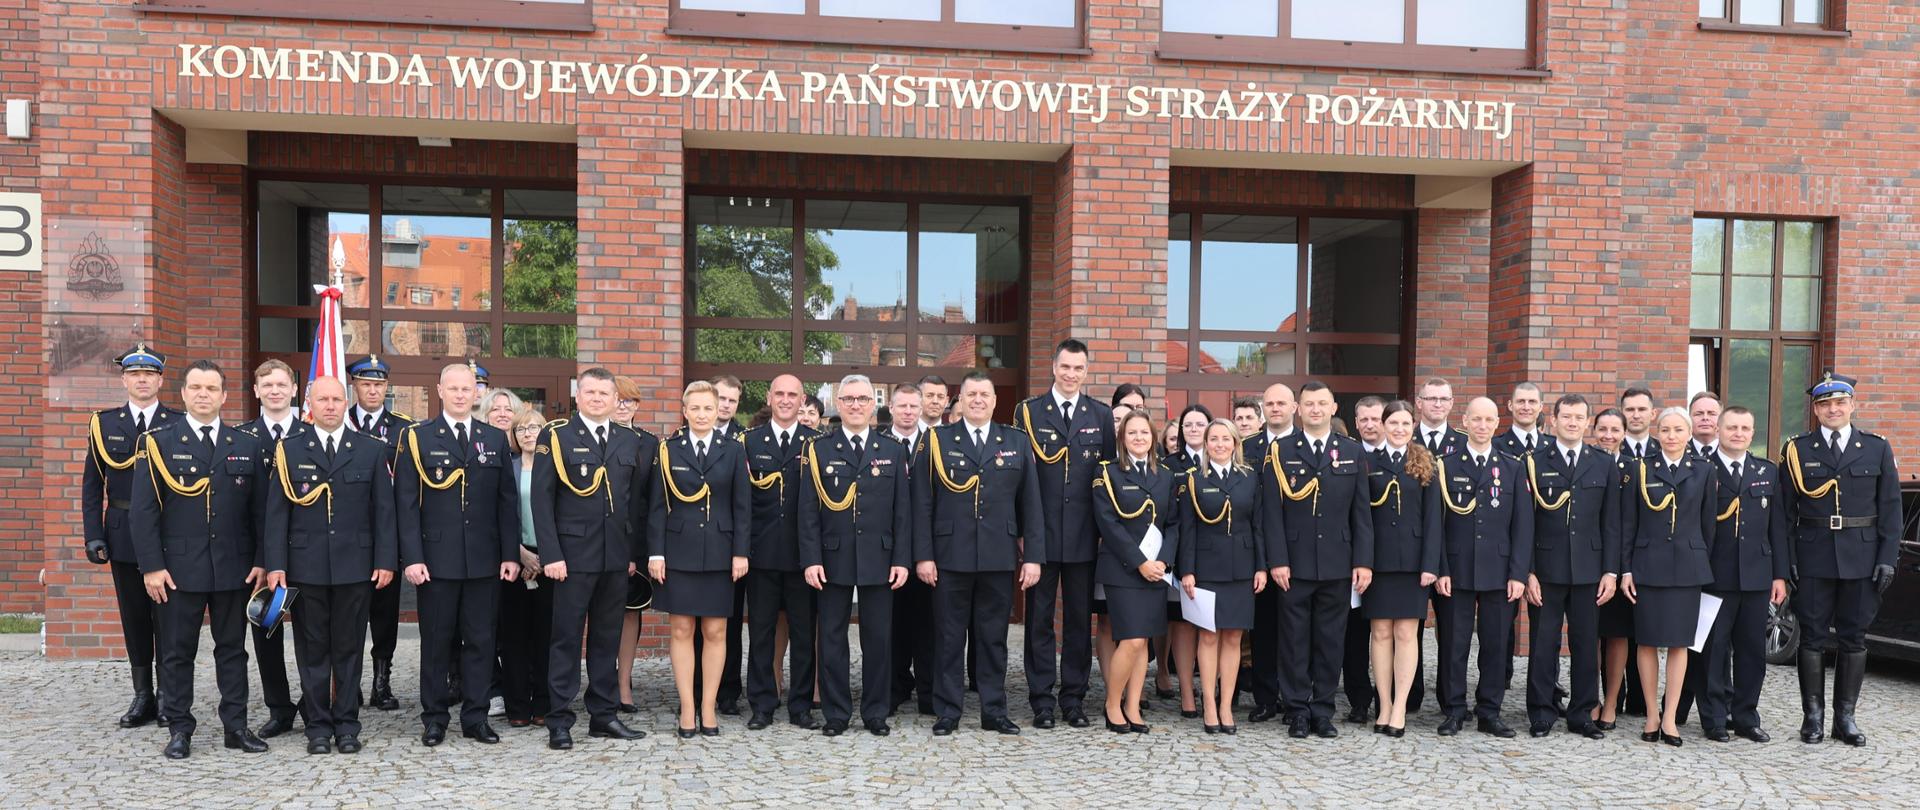 Uroczystość Obchodów Dnia Strażaka w Komendzie Wojewódzkiej PSP we Wrocławiu.